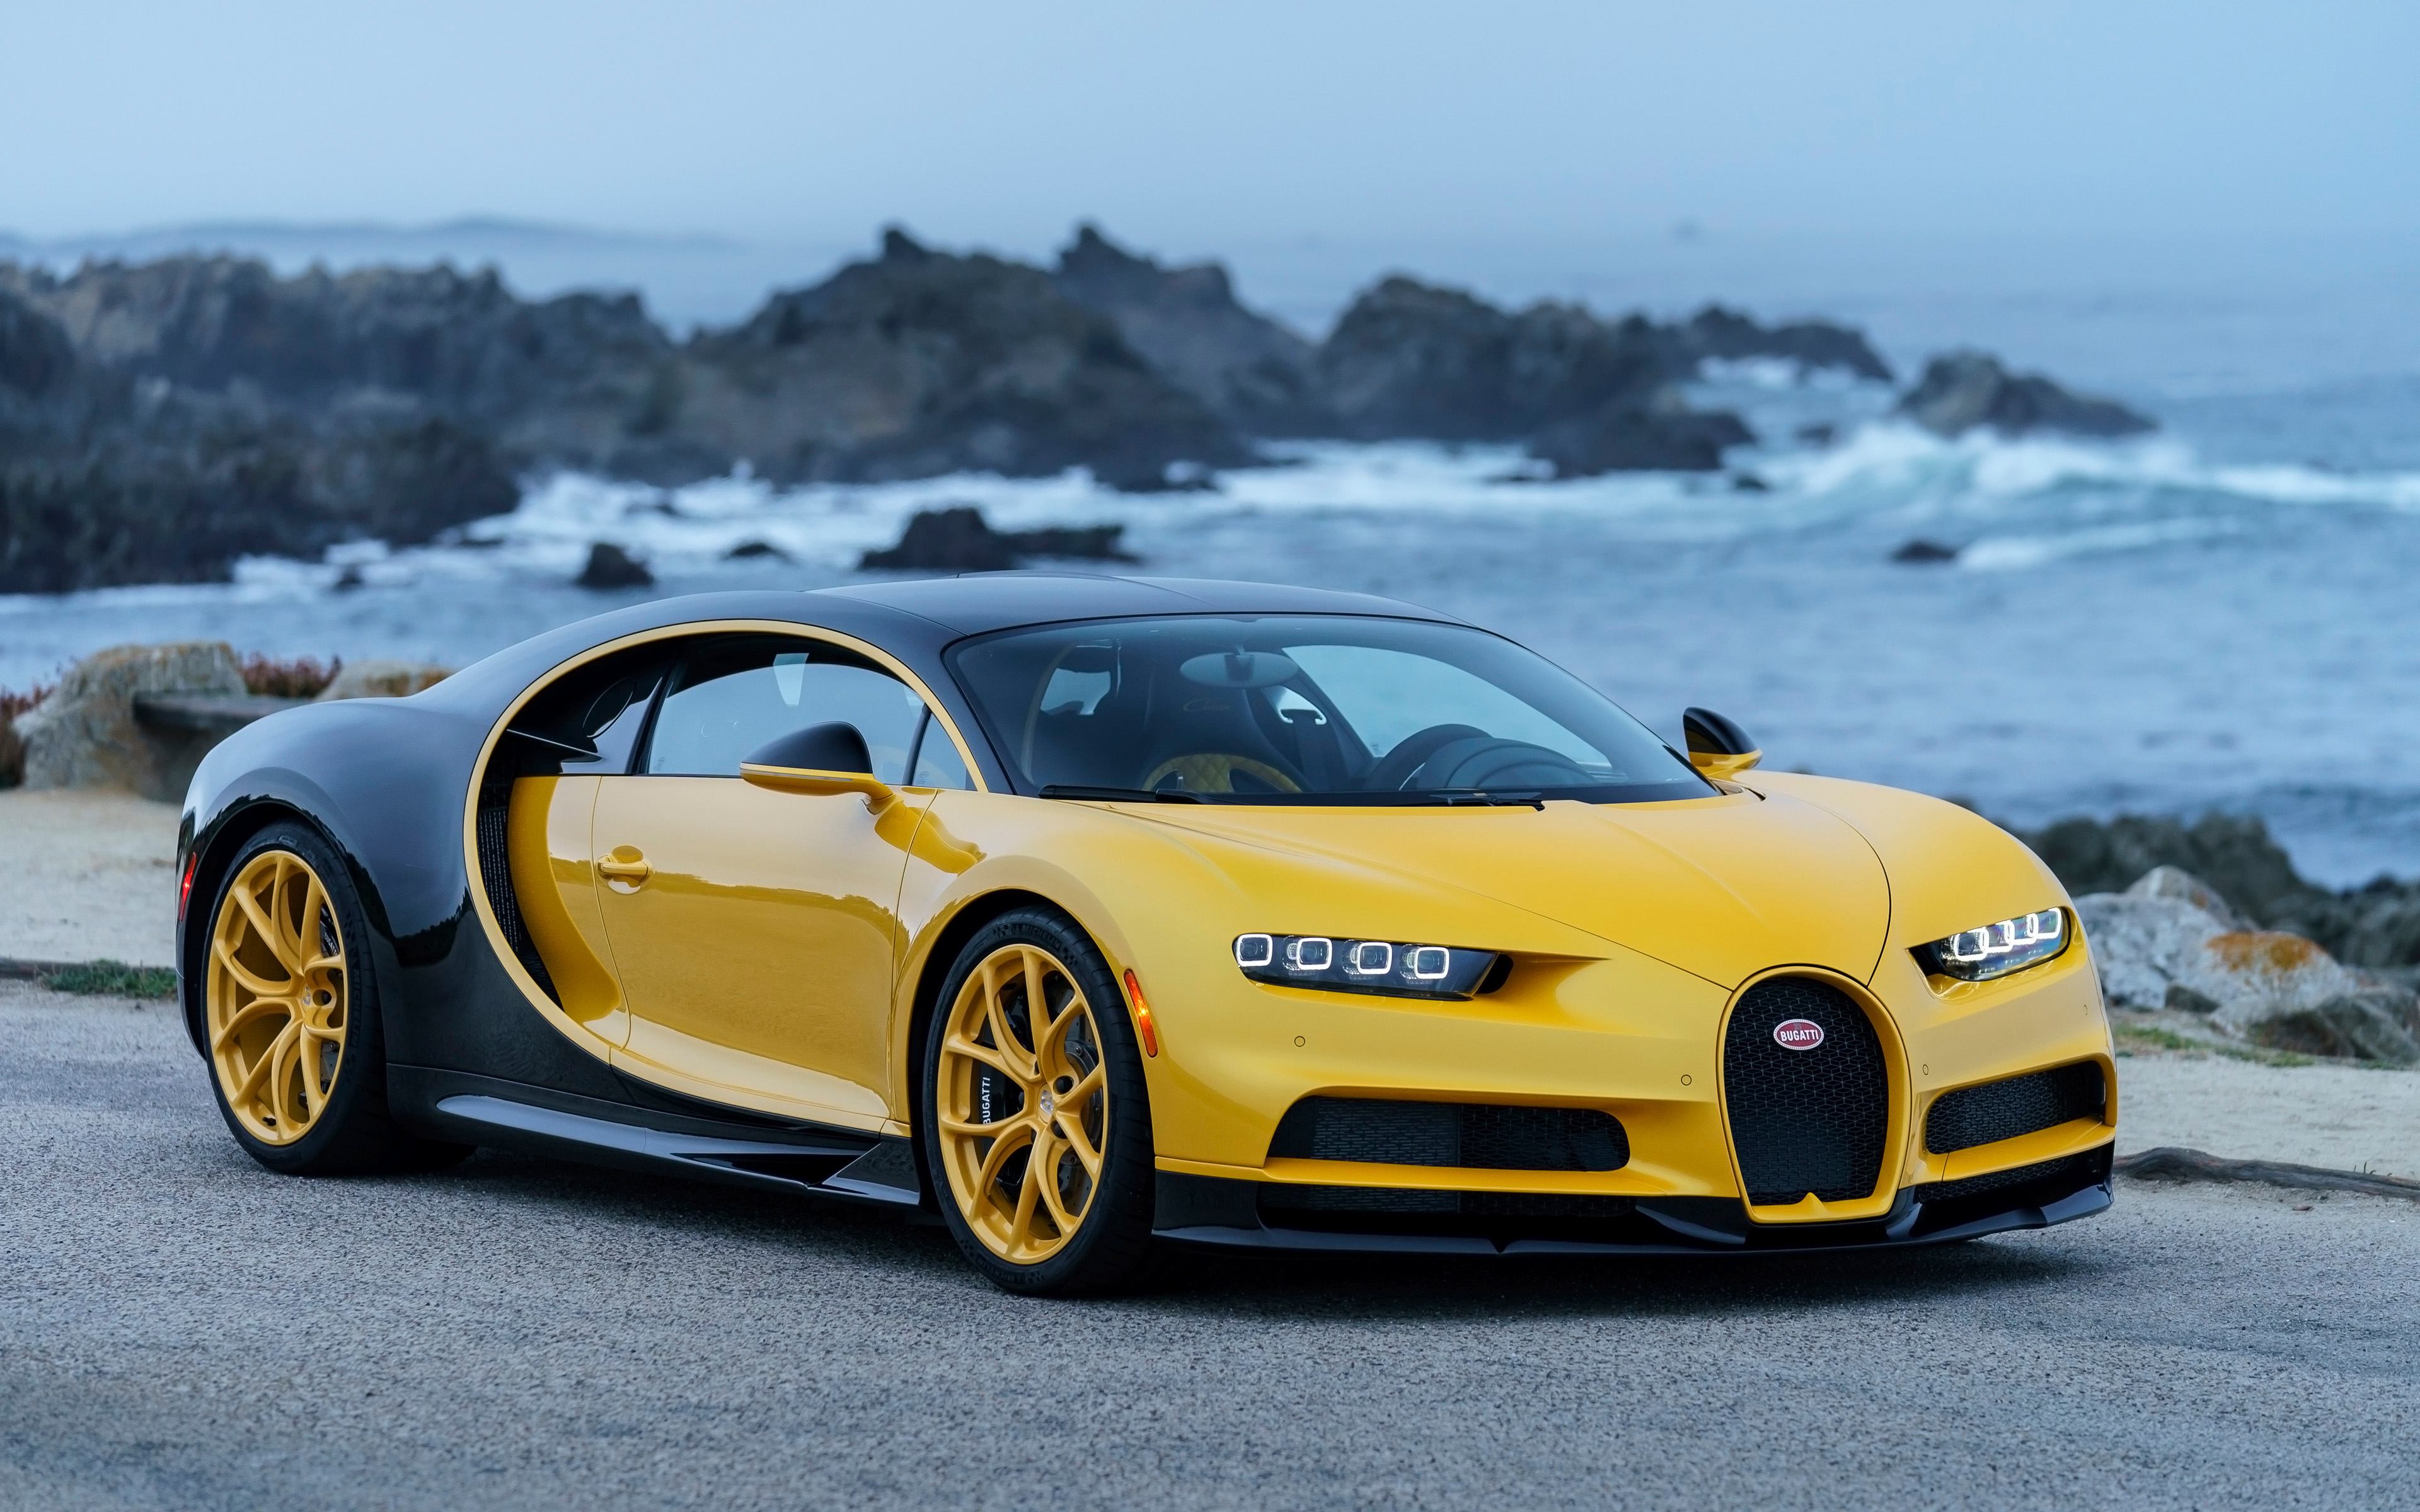 2018 Bugatti Chiron Yellow and Black 4K